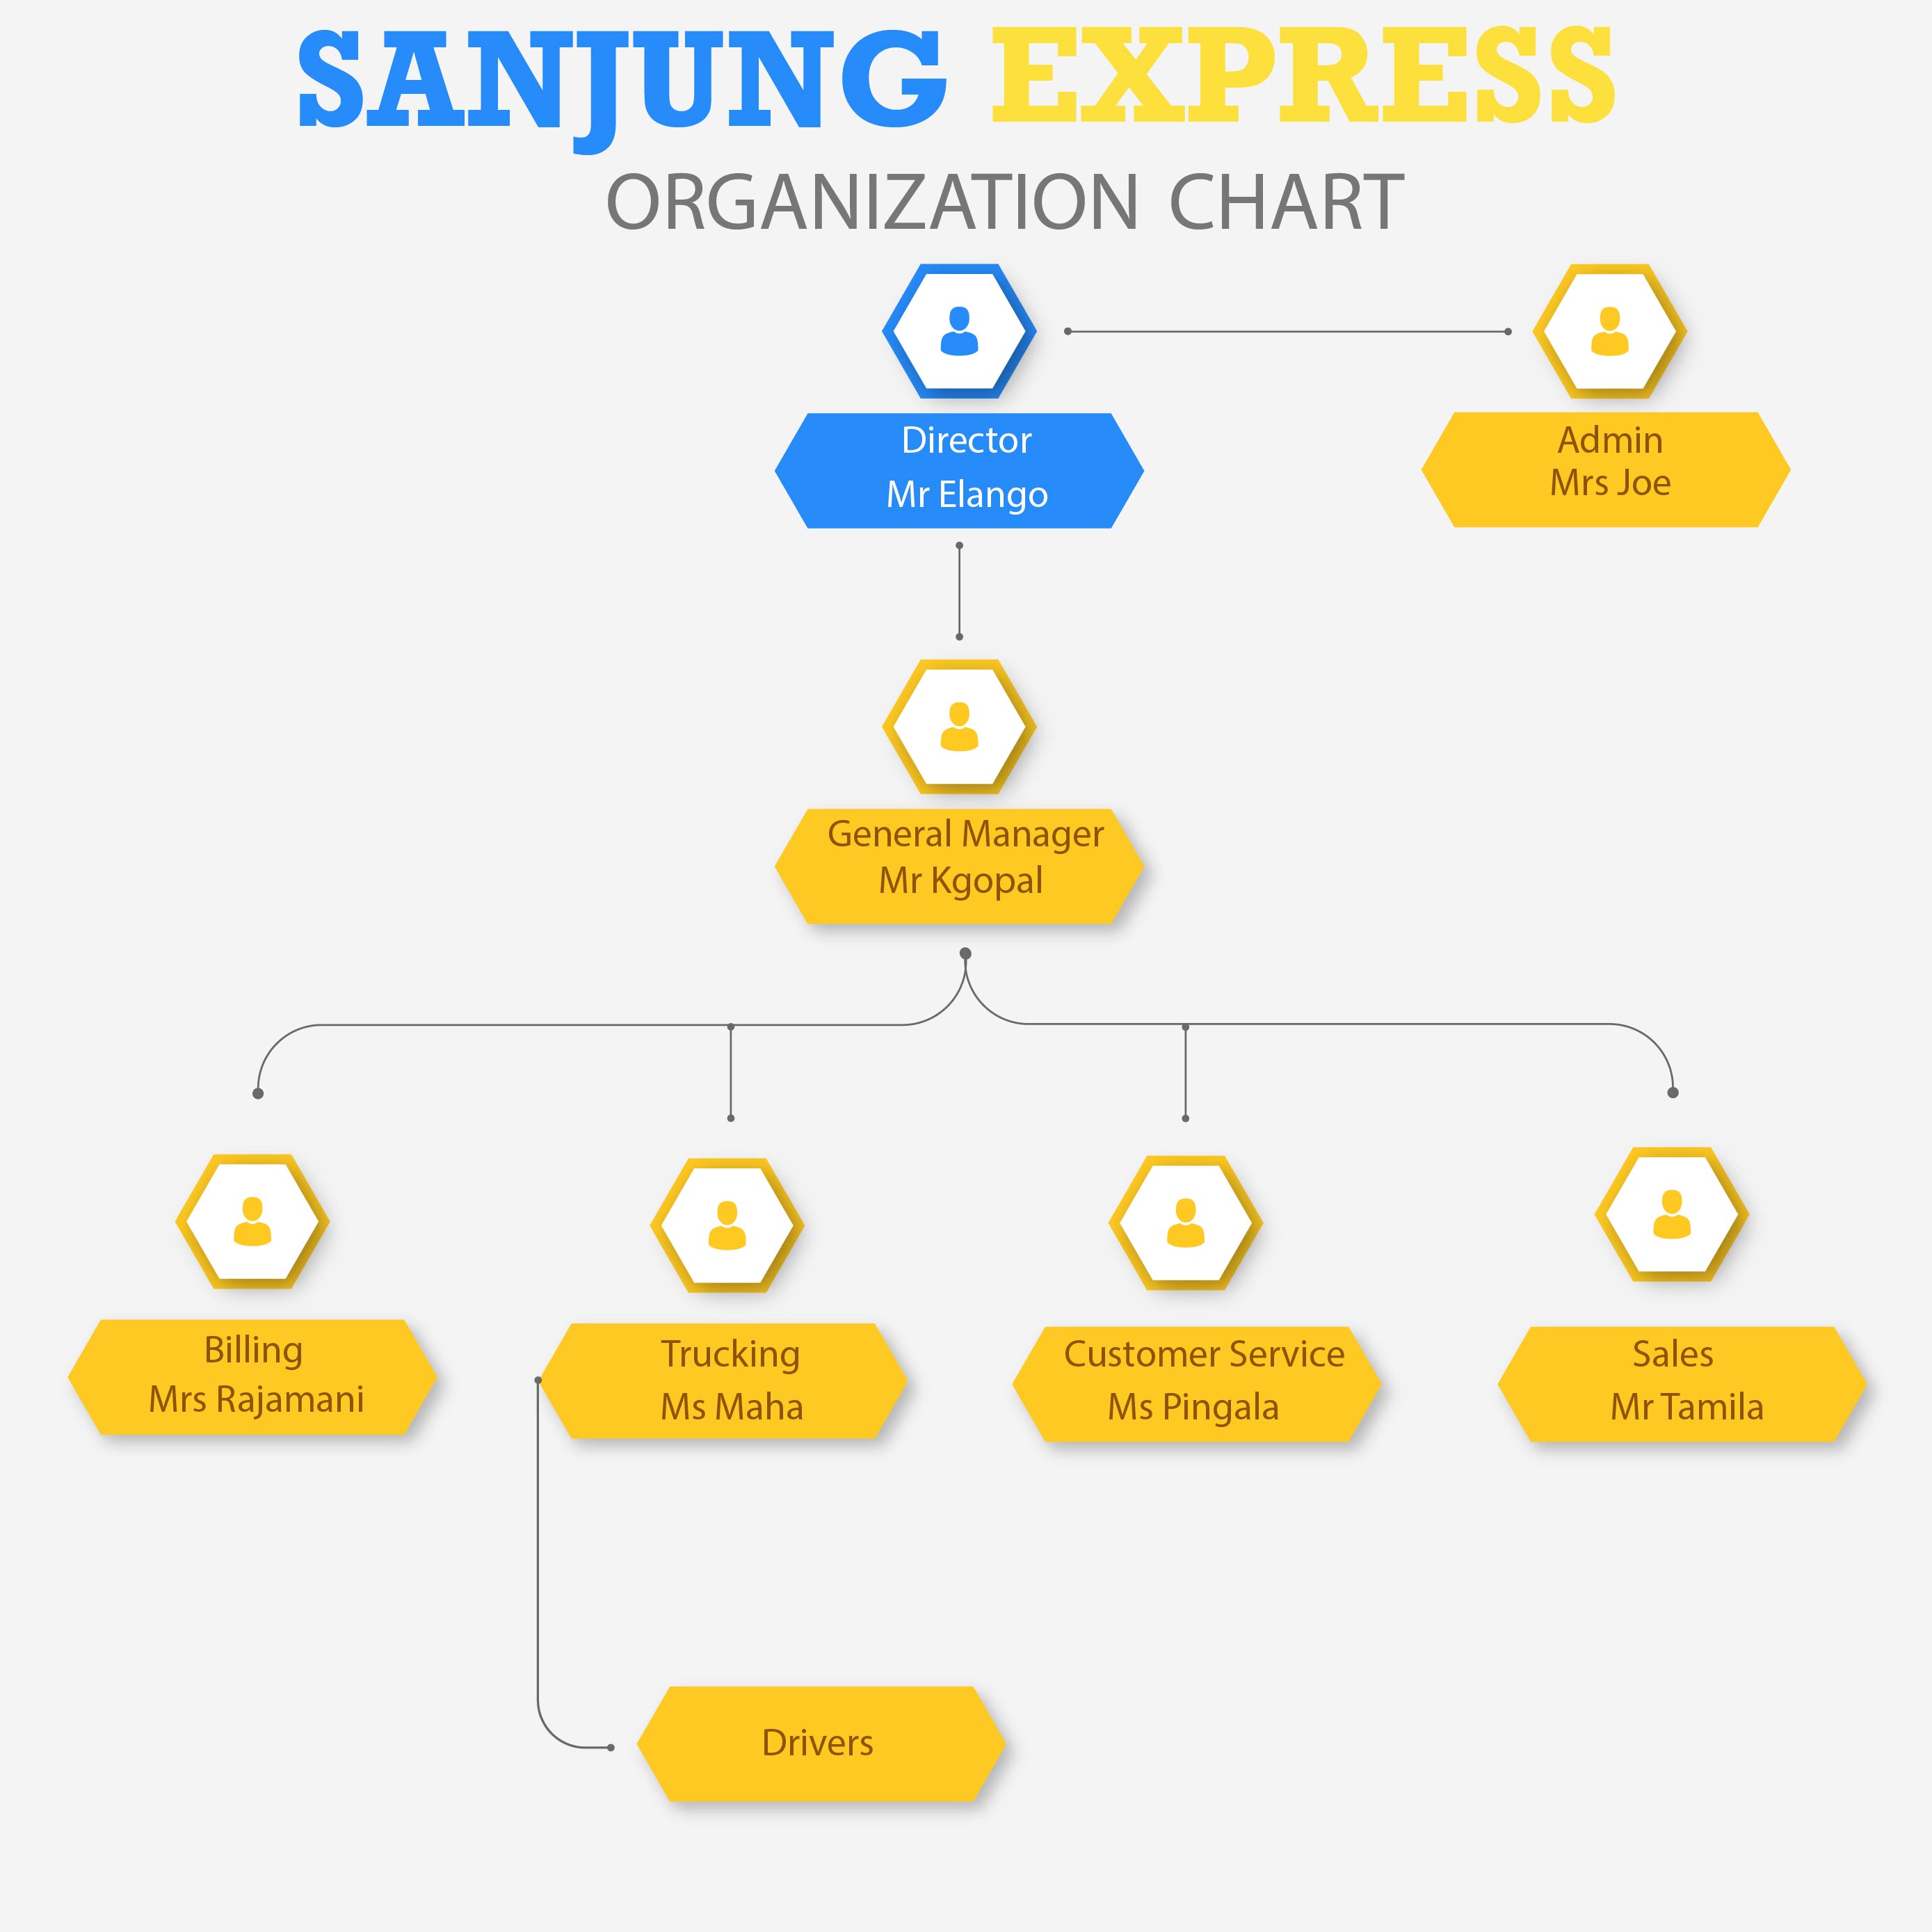 Sanjung Express